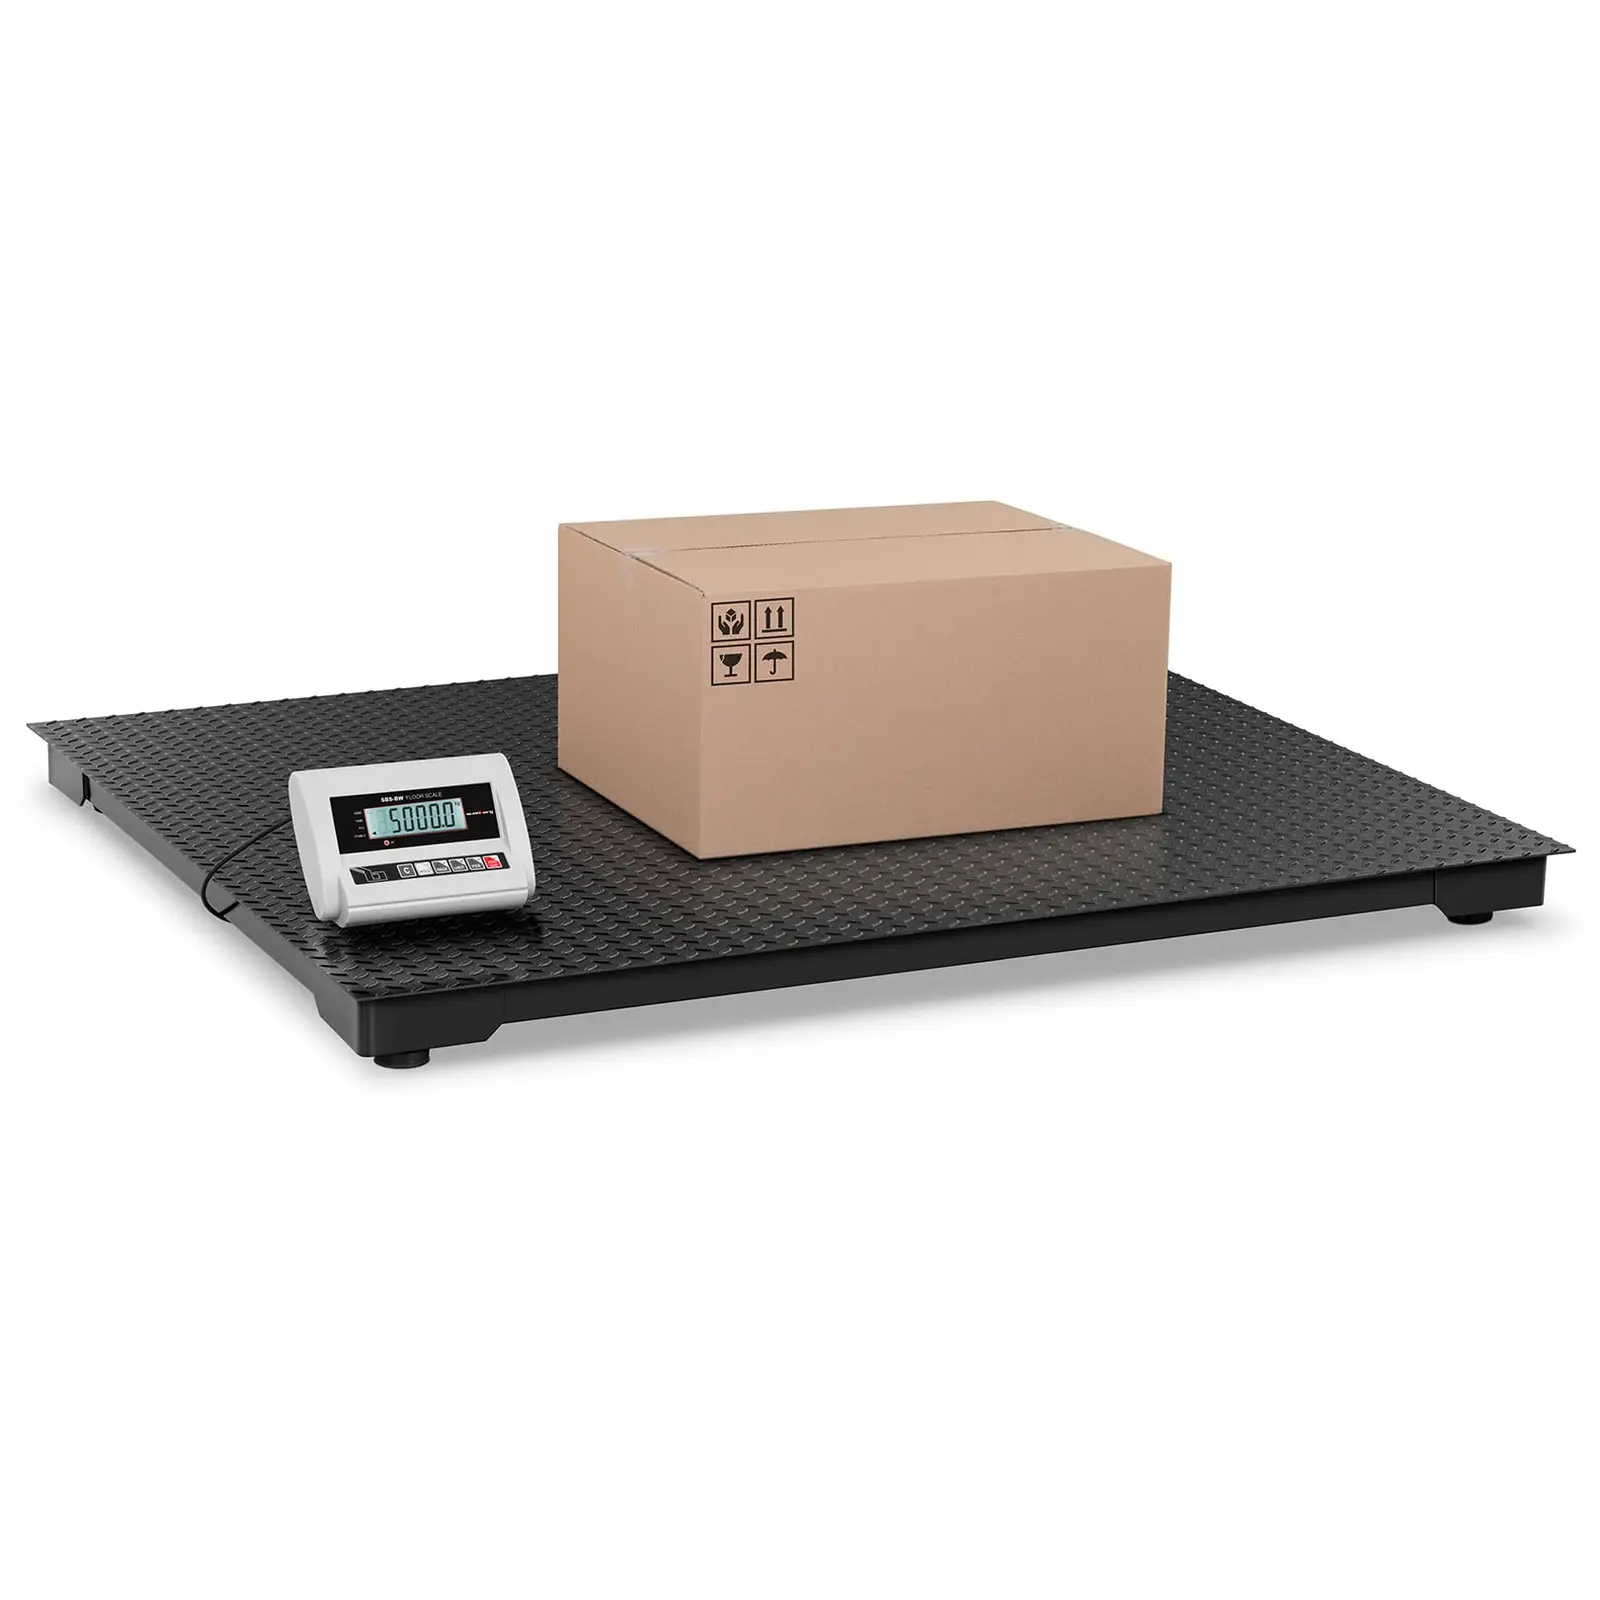 Podlahová váha ECO 5 000 kg / 2 kg LCD - Podlahové váhy Steinberg Systems